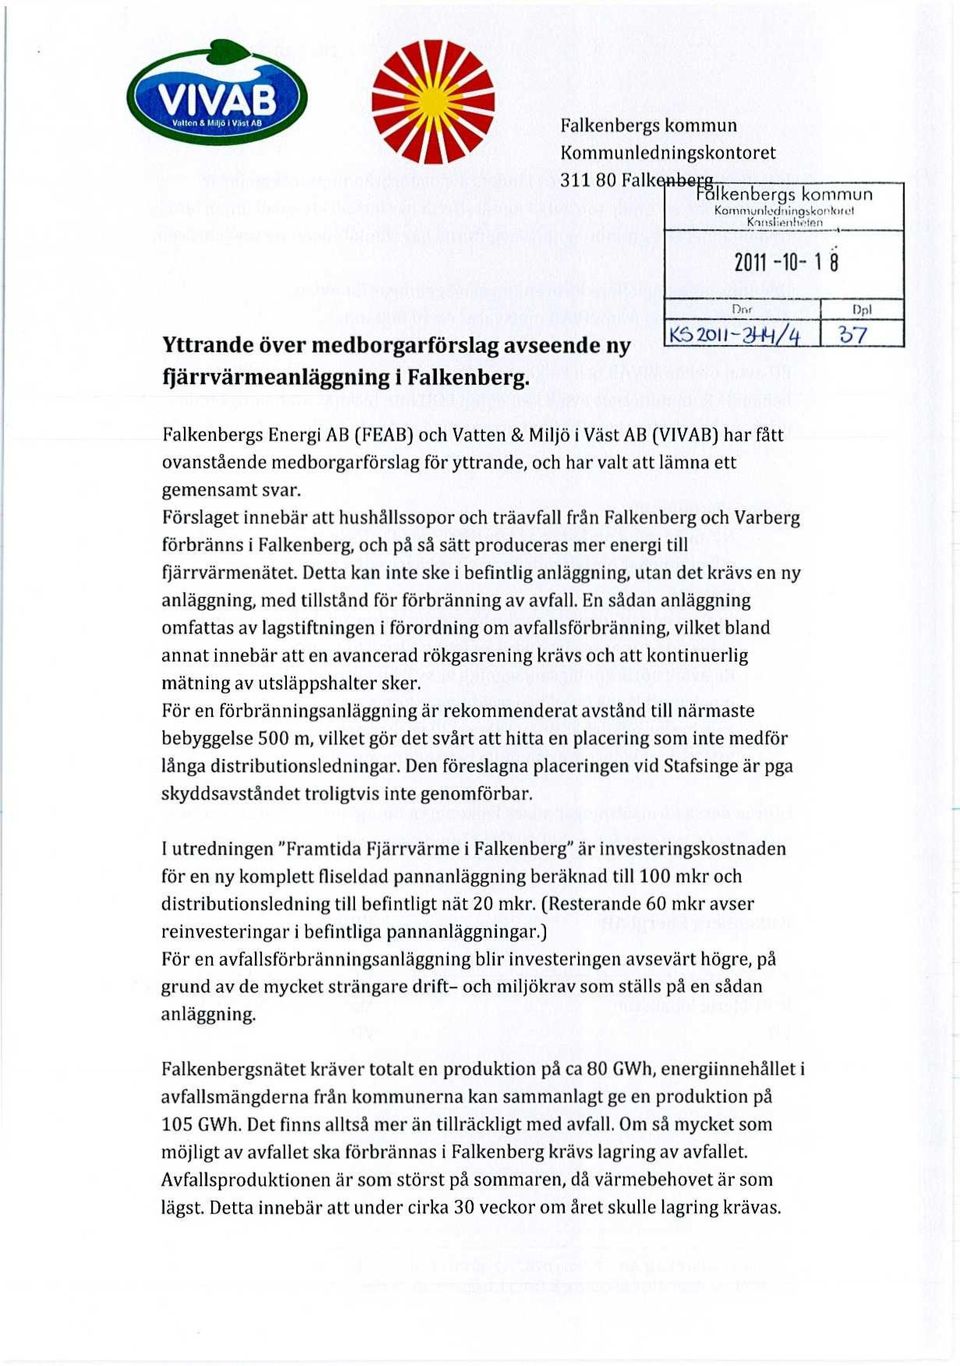 Dnr f)pl K3 2011-23-111 t )07 Falkenbergs Energi AB (FEAB) och Vatten & Miljö i Väst AB (VIVAB) har fått ovanstående medborgarförslag för yttrande, och har valt att lämna ett gemensamt svar.